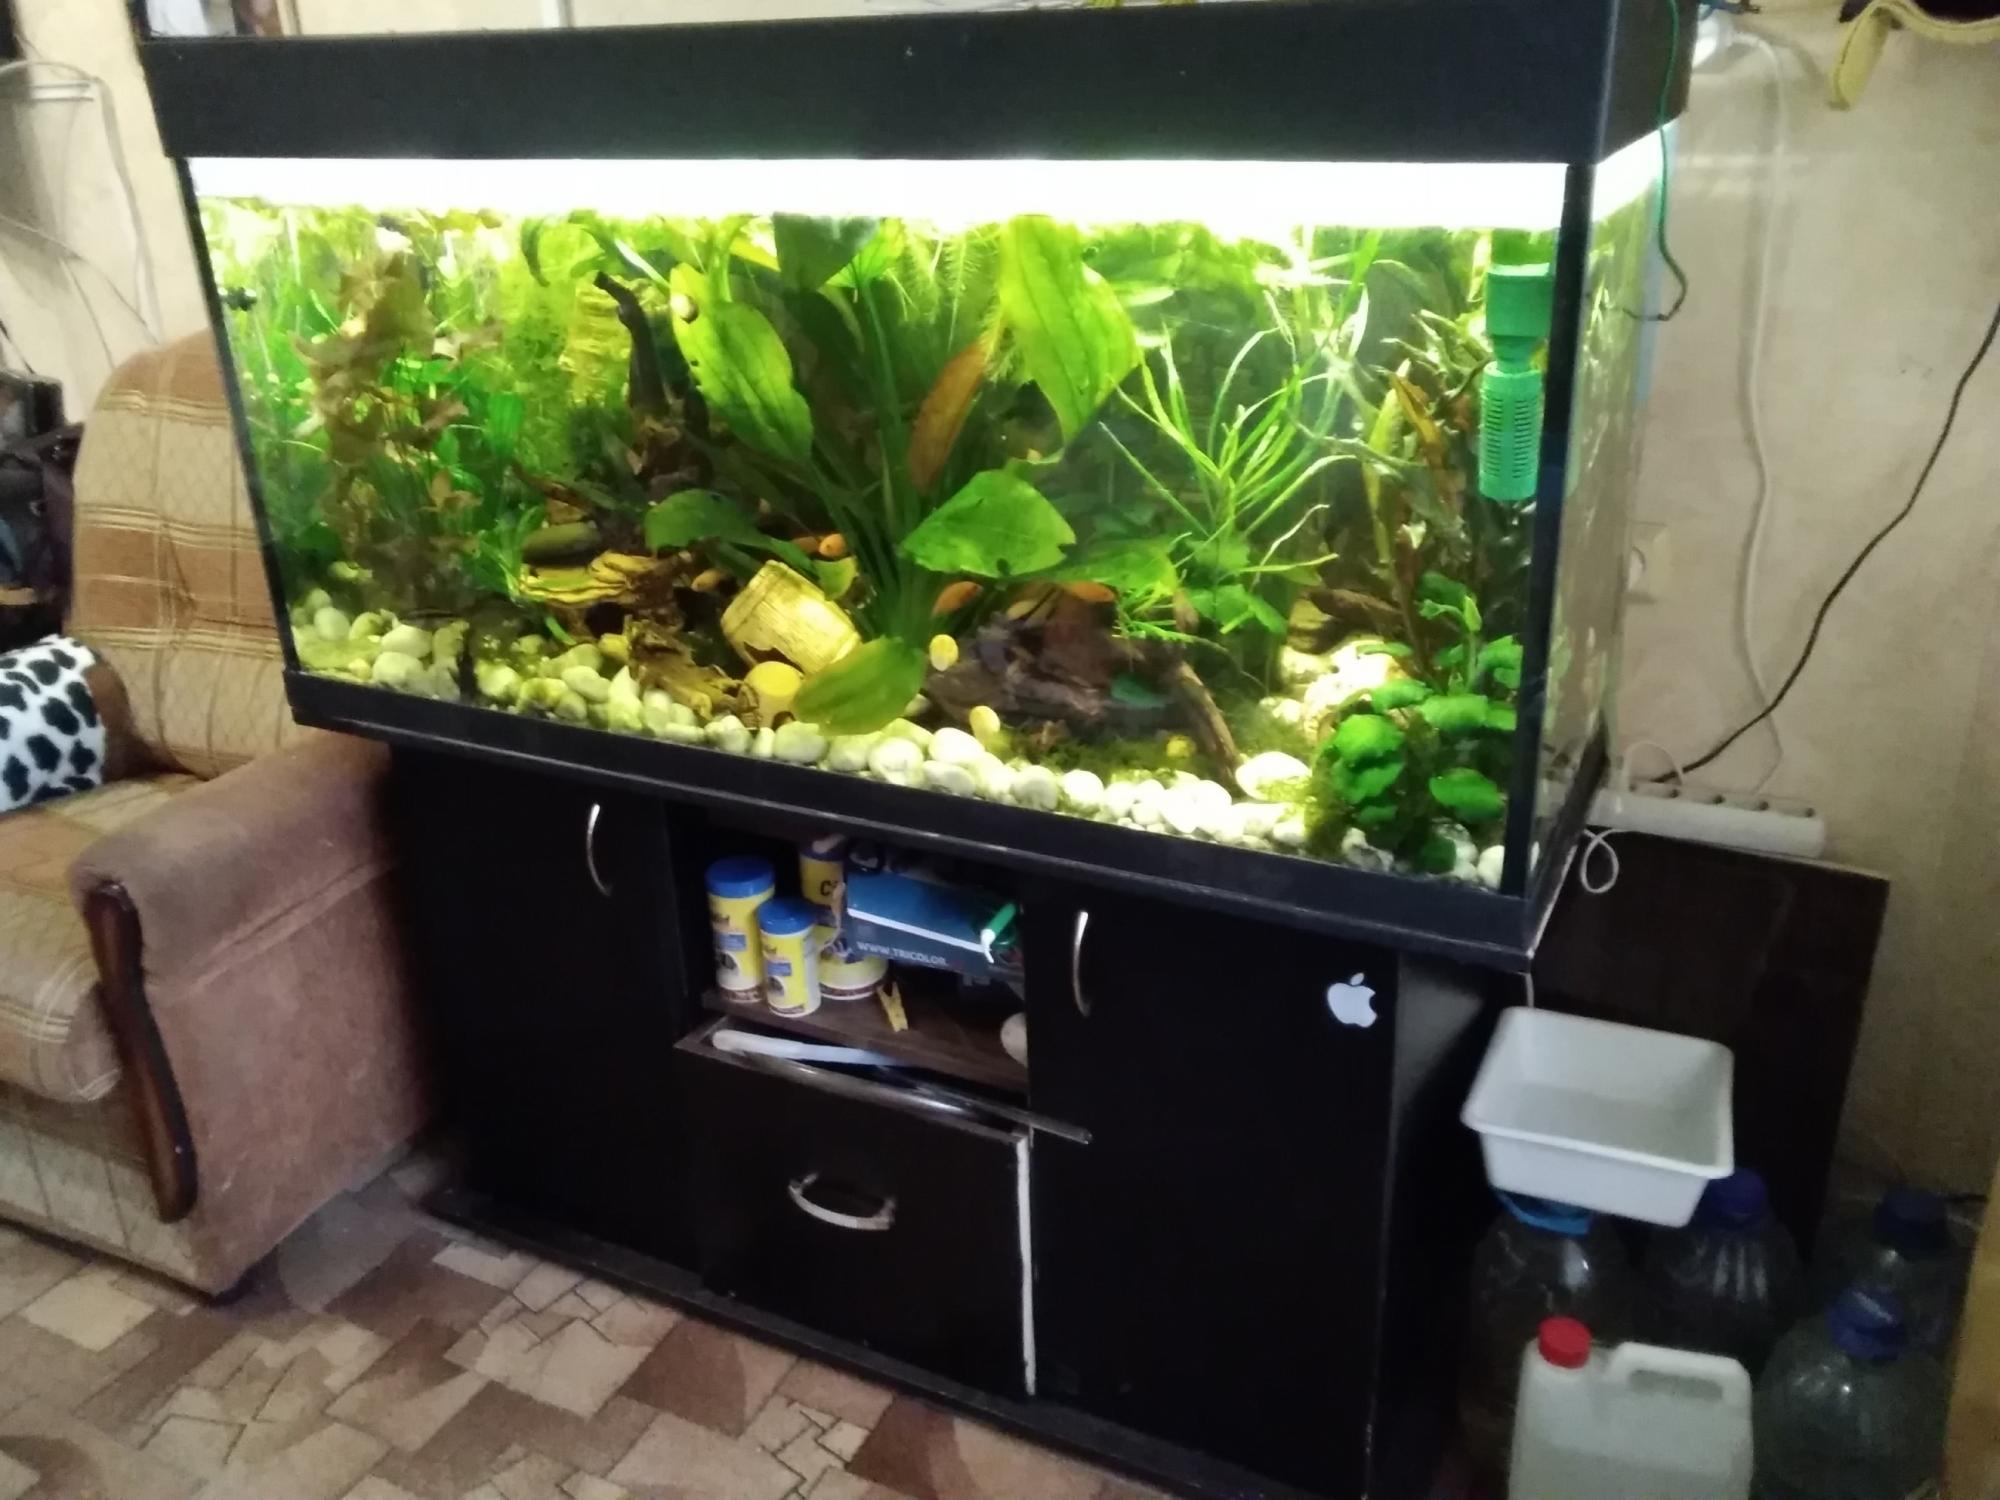 аквариум тетра 100 литров с тумбой